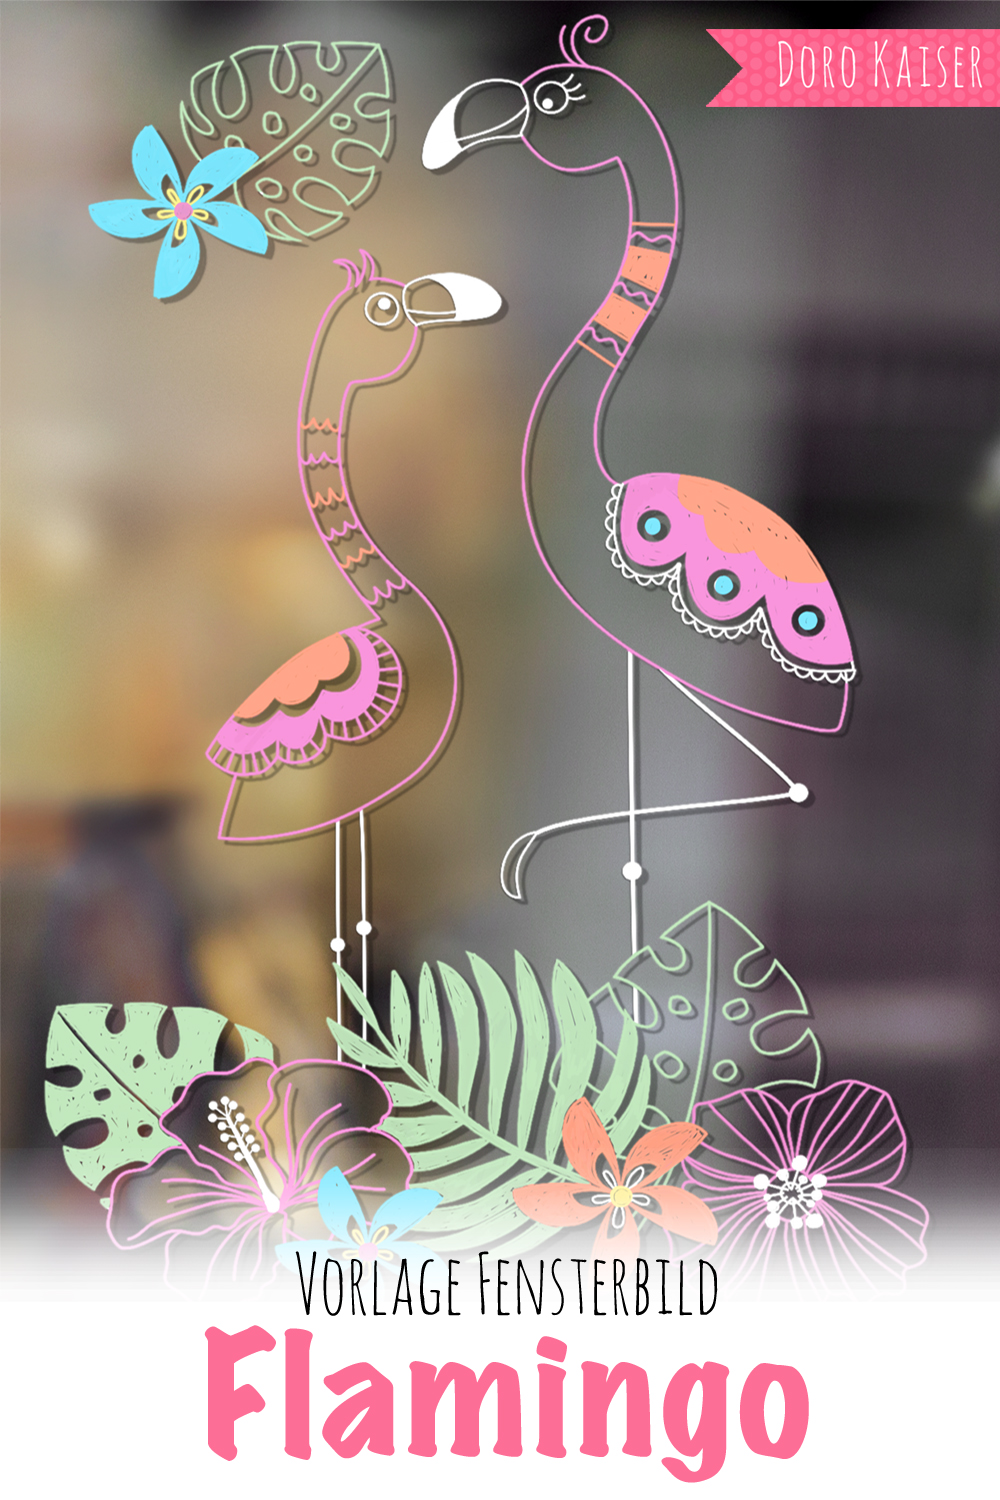 Freebie Vorlage Fur Ein Fensterbild Mit Flamingo Doro Kaiser Grafik Illustration